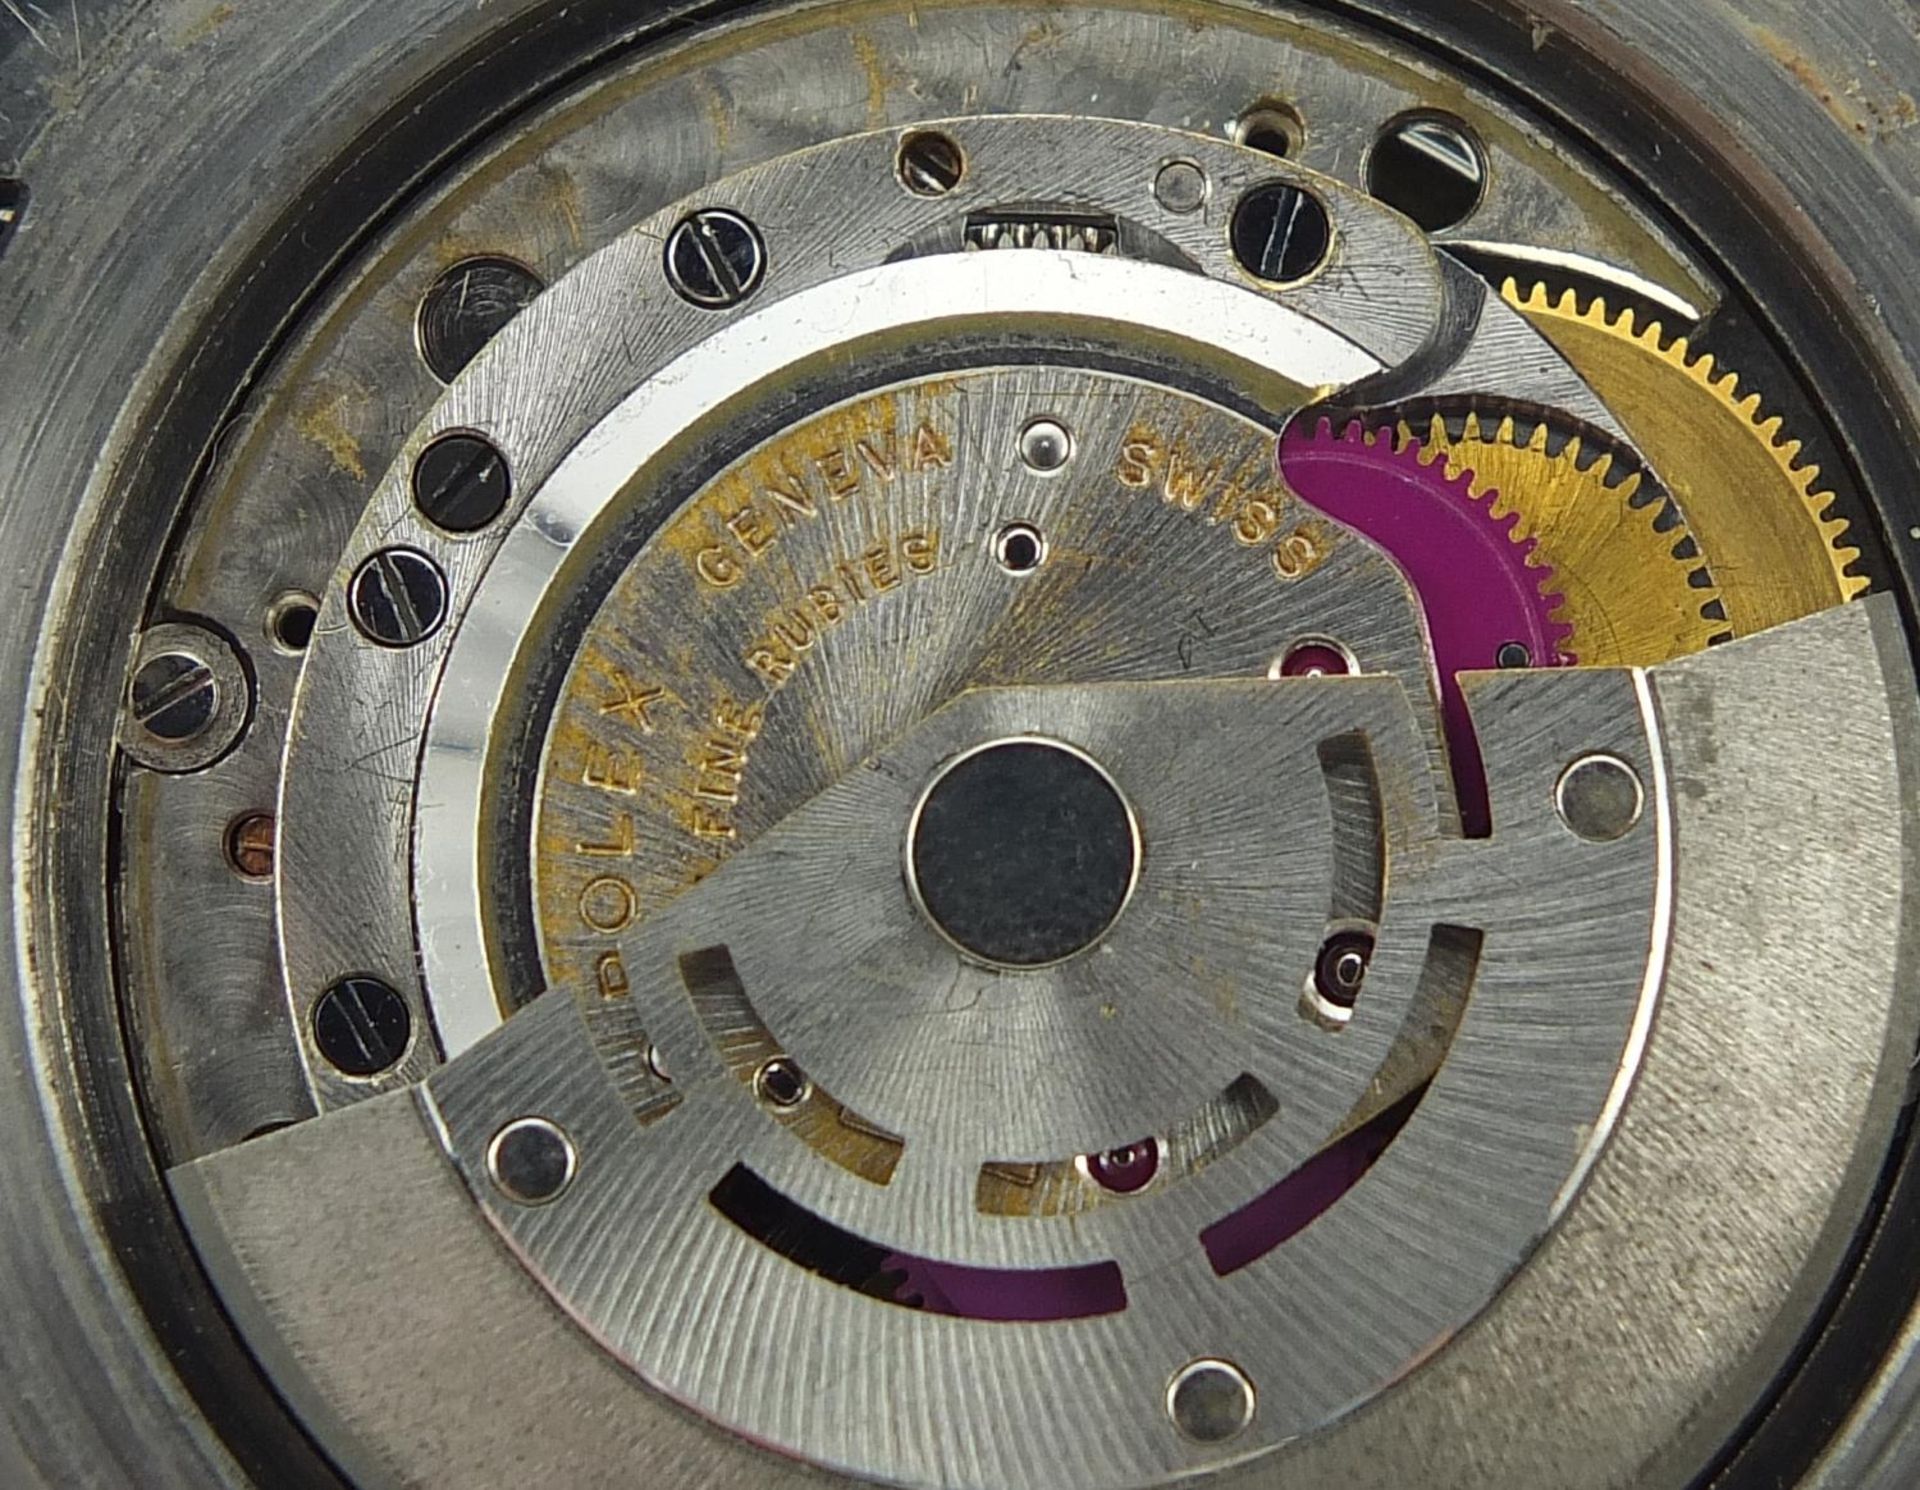 Rolex gentlemen's Submariner automatic wristwatch, ref 5513, serial number 1005684, 40mm in diameter - Bild 6 aus 9